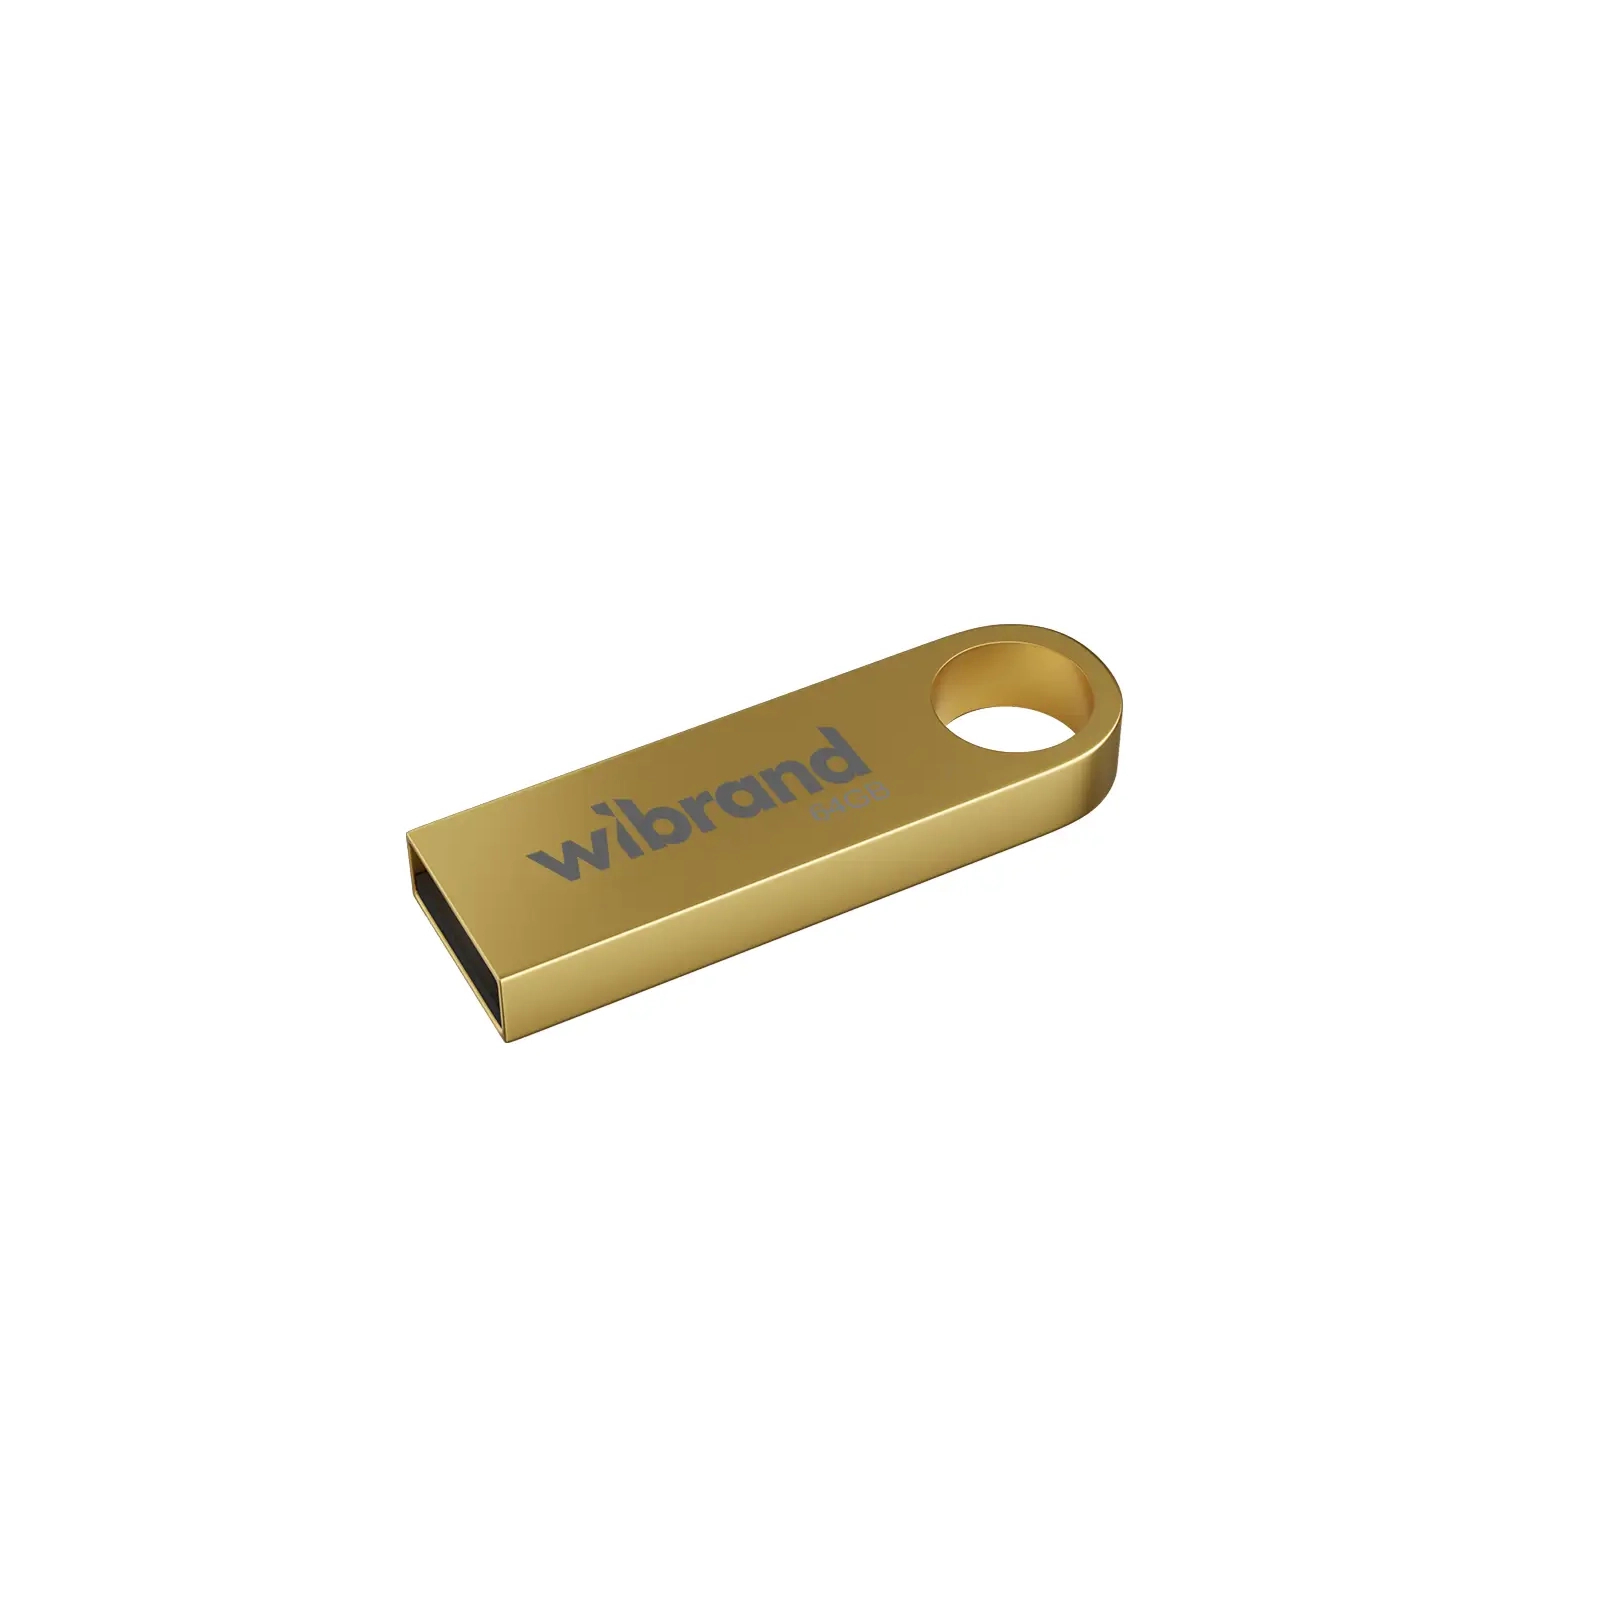 USB флеш накопитель Wibrand 16GB Puma Gold USB 2.0 (WI2.0/PU16U1G)